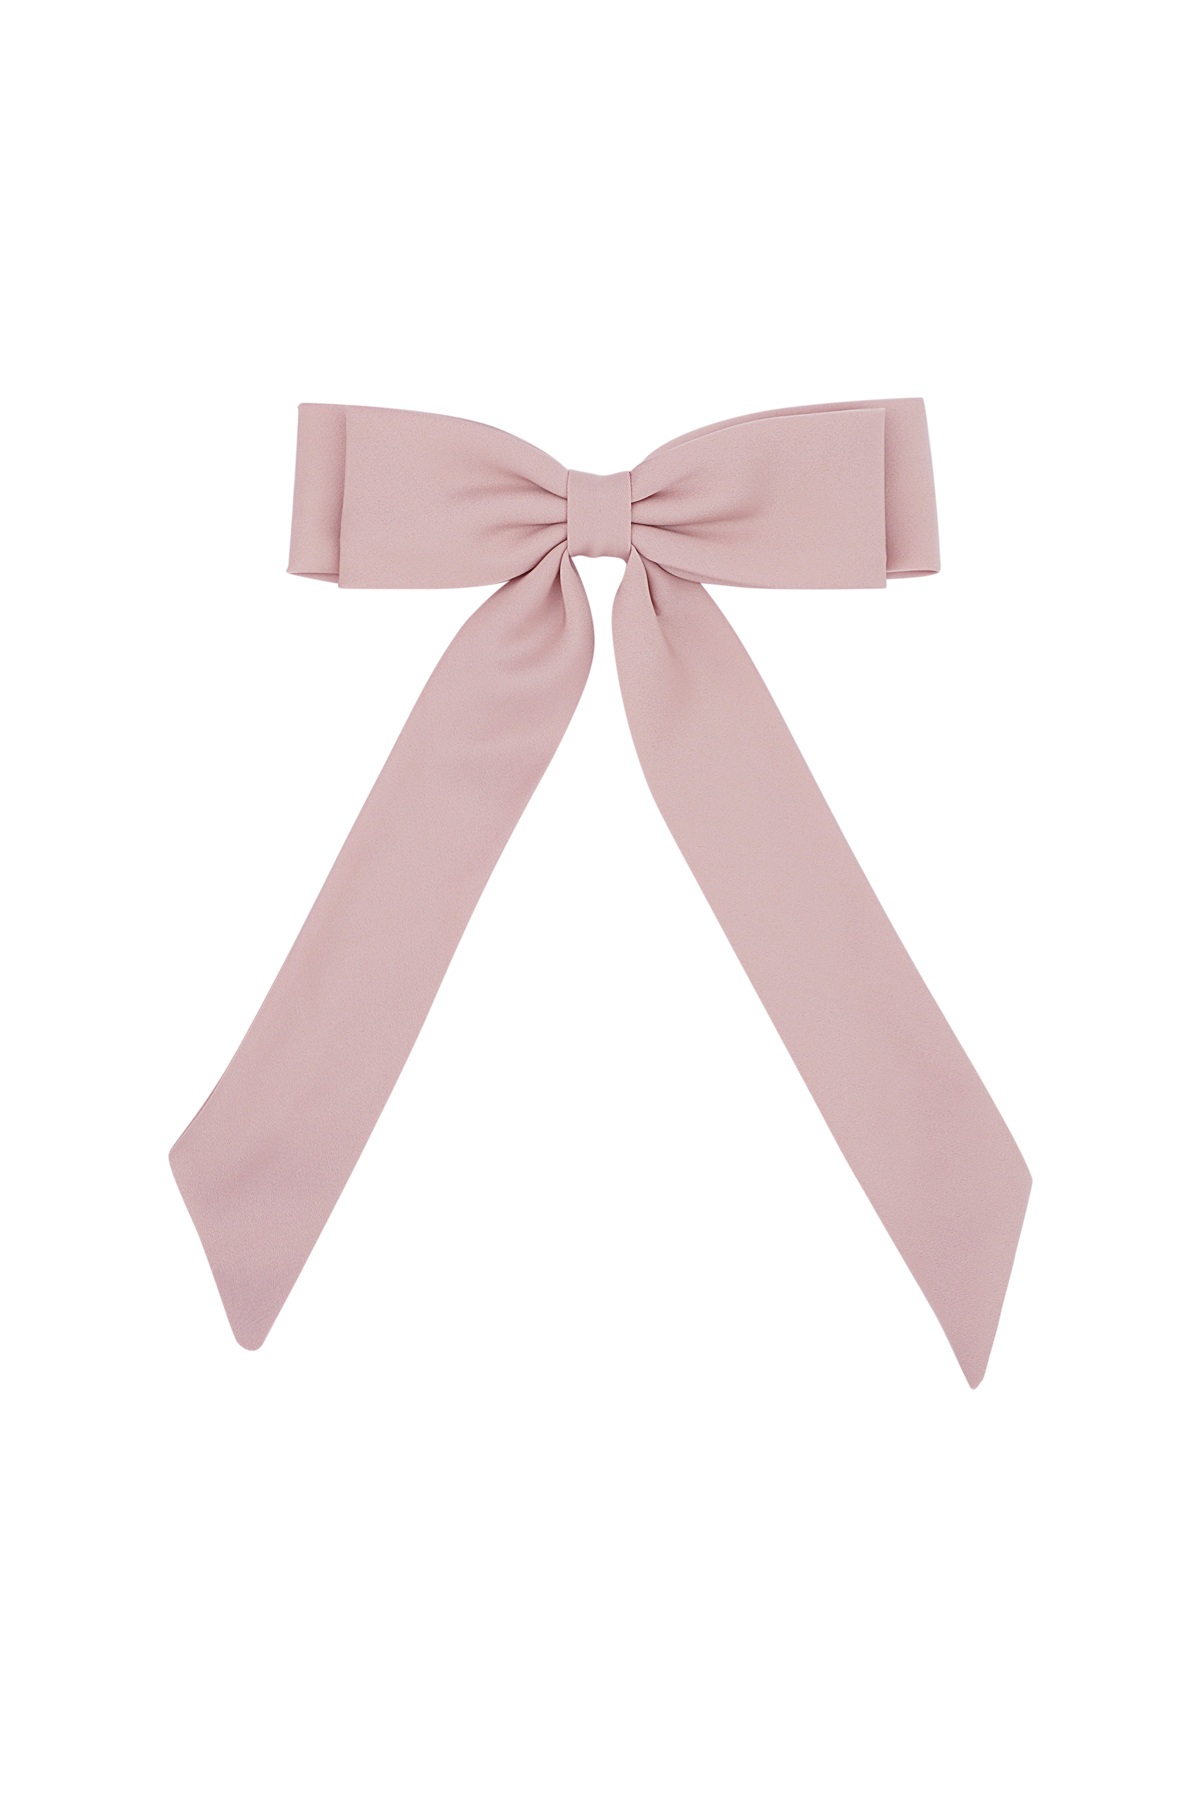 Hair bow basic babe - pink h5 